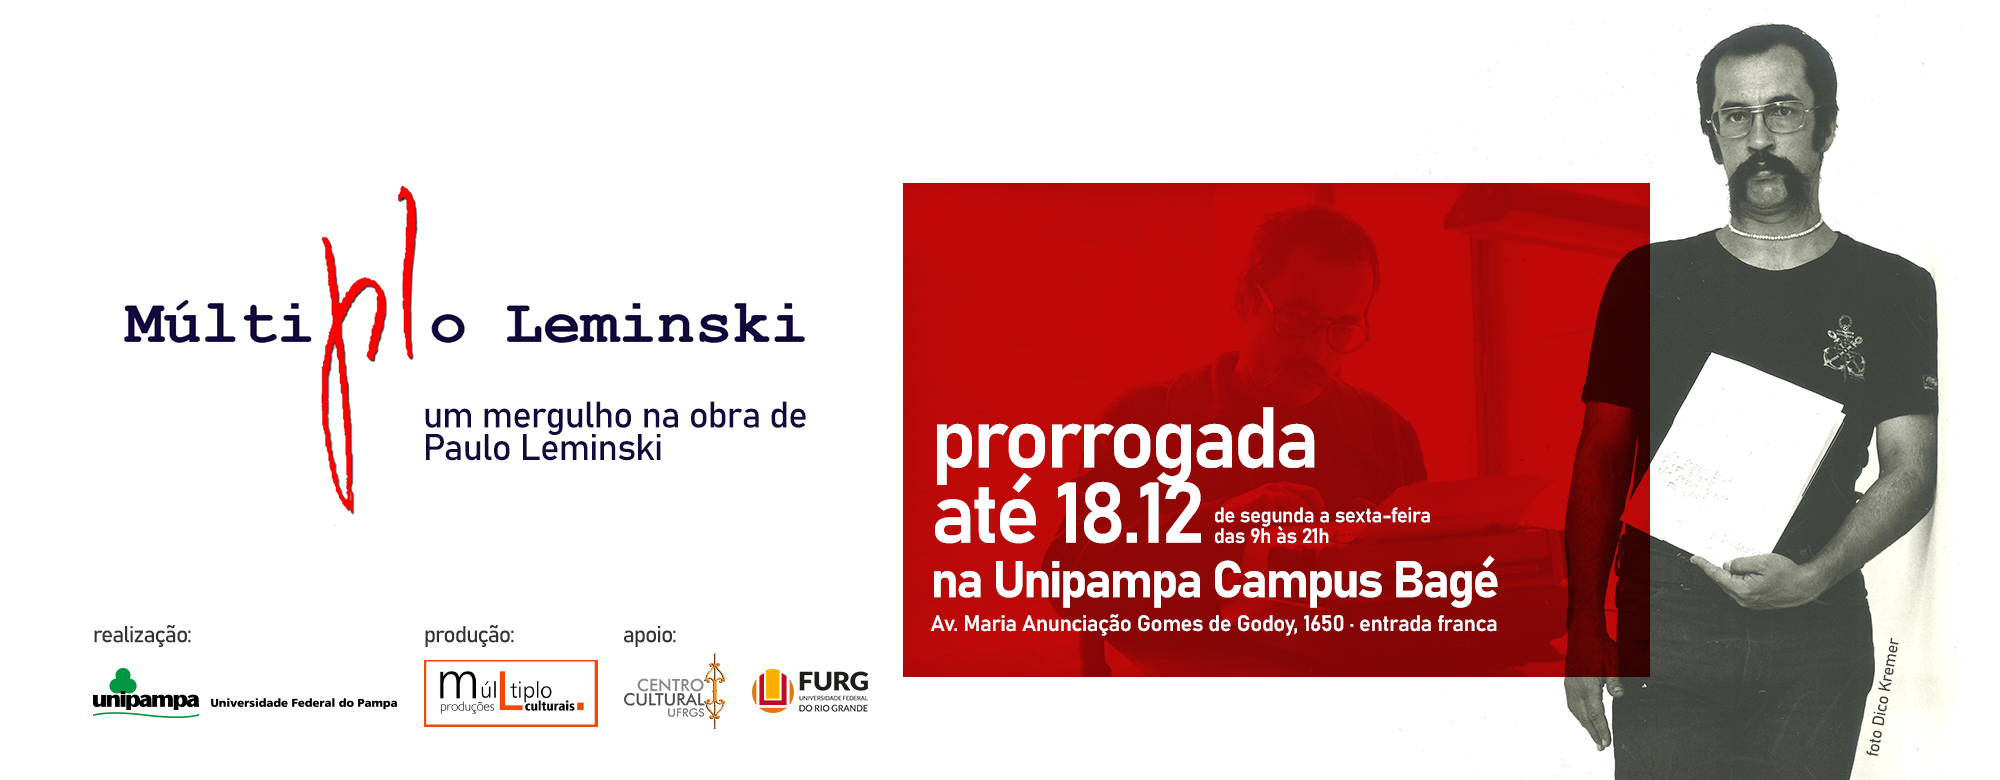 Exposição Múltiplo Leminski ocorre no Campus Bagé da Unipampa